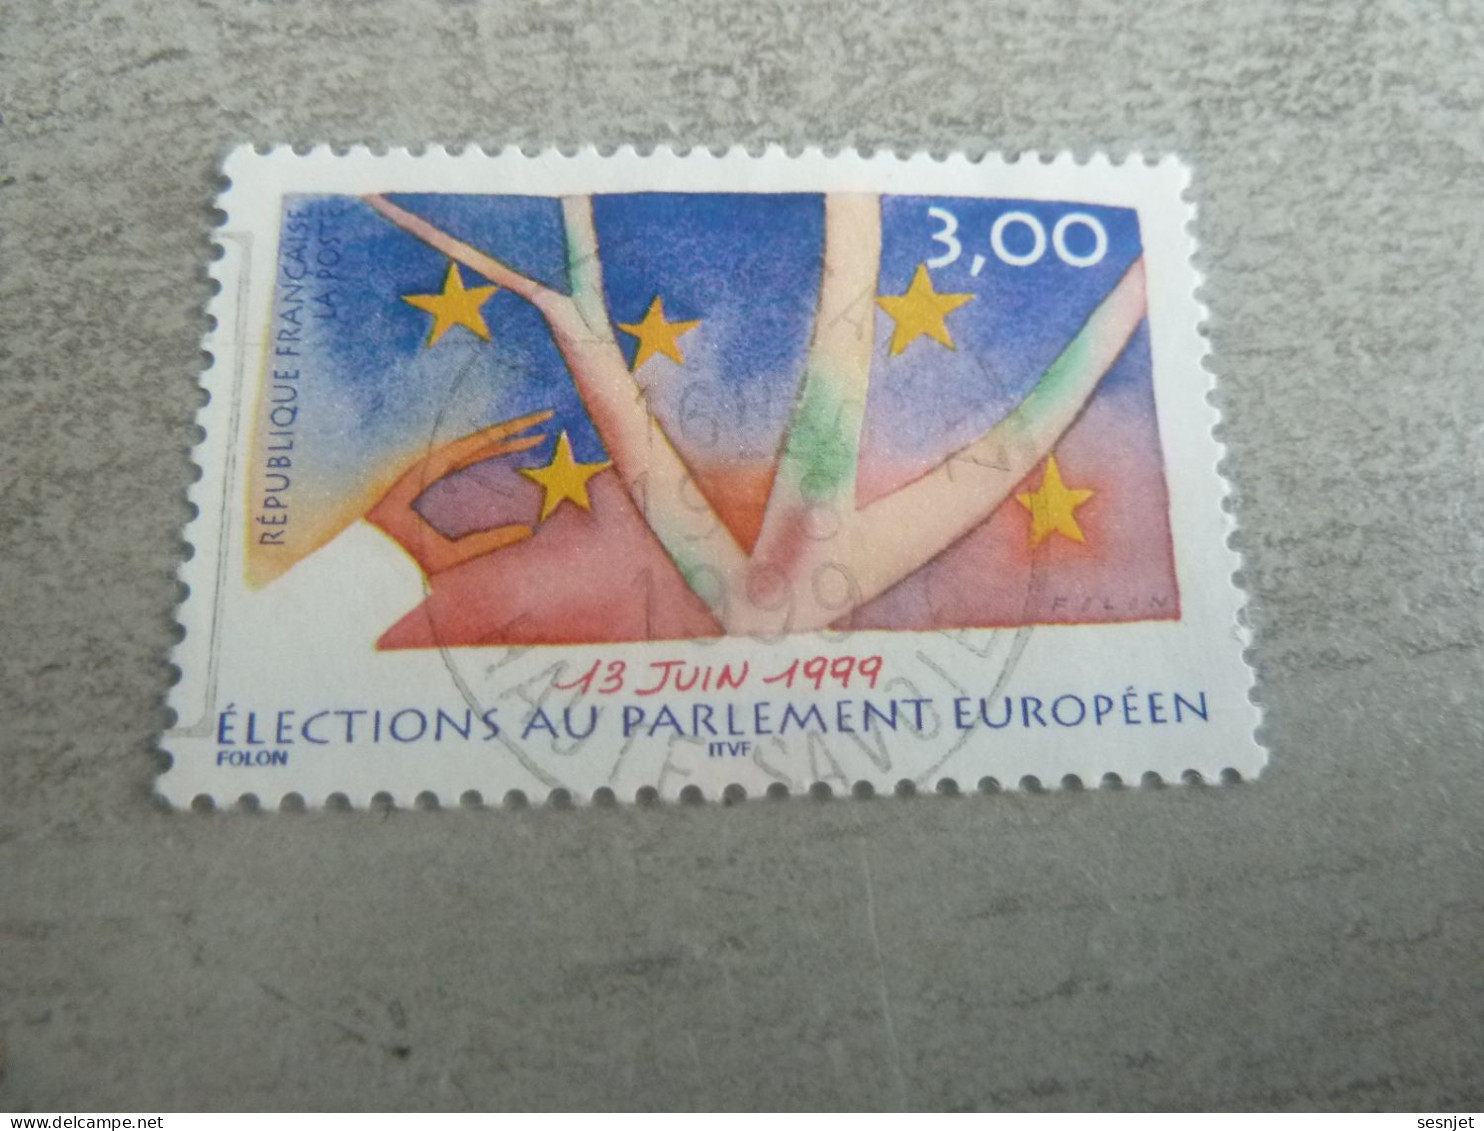 Elections Au Parlement Européen - 3f. - Yt 3237 - Multicolore - Oblitéré - Année 1999 - - Gebraucht